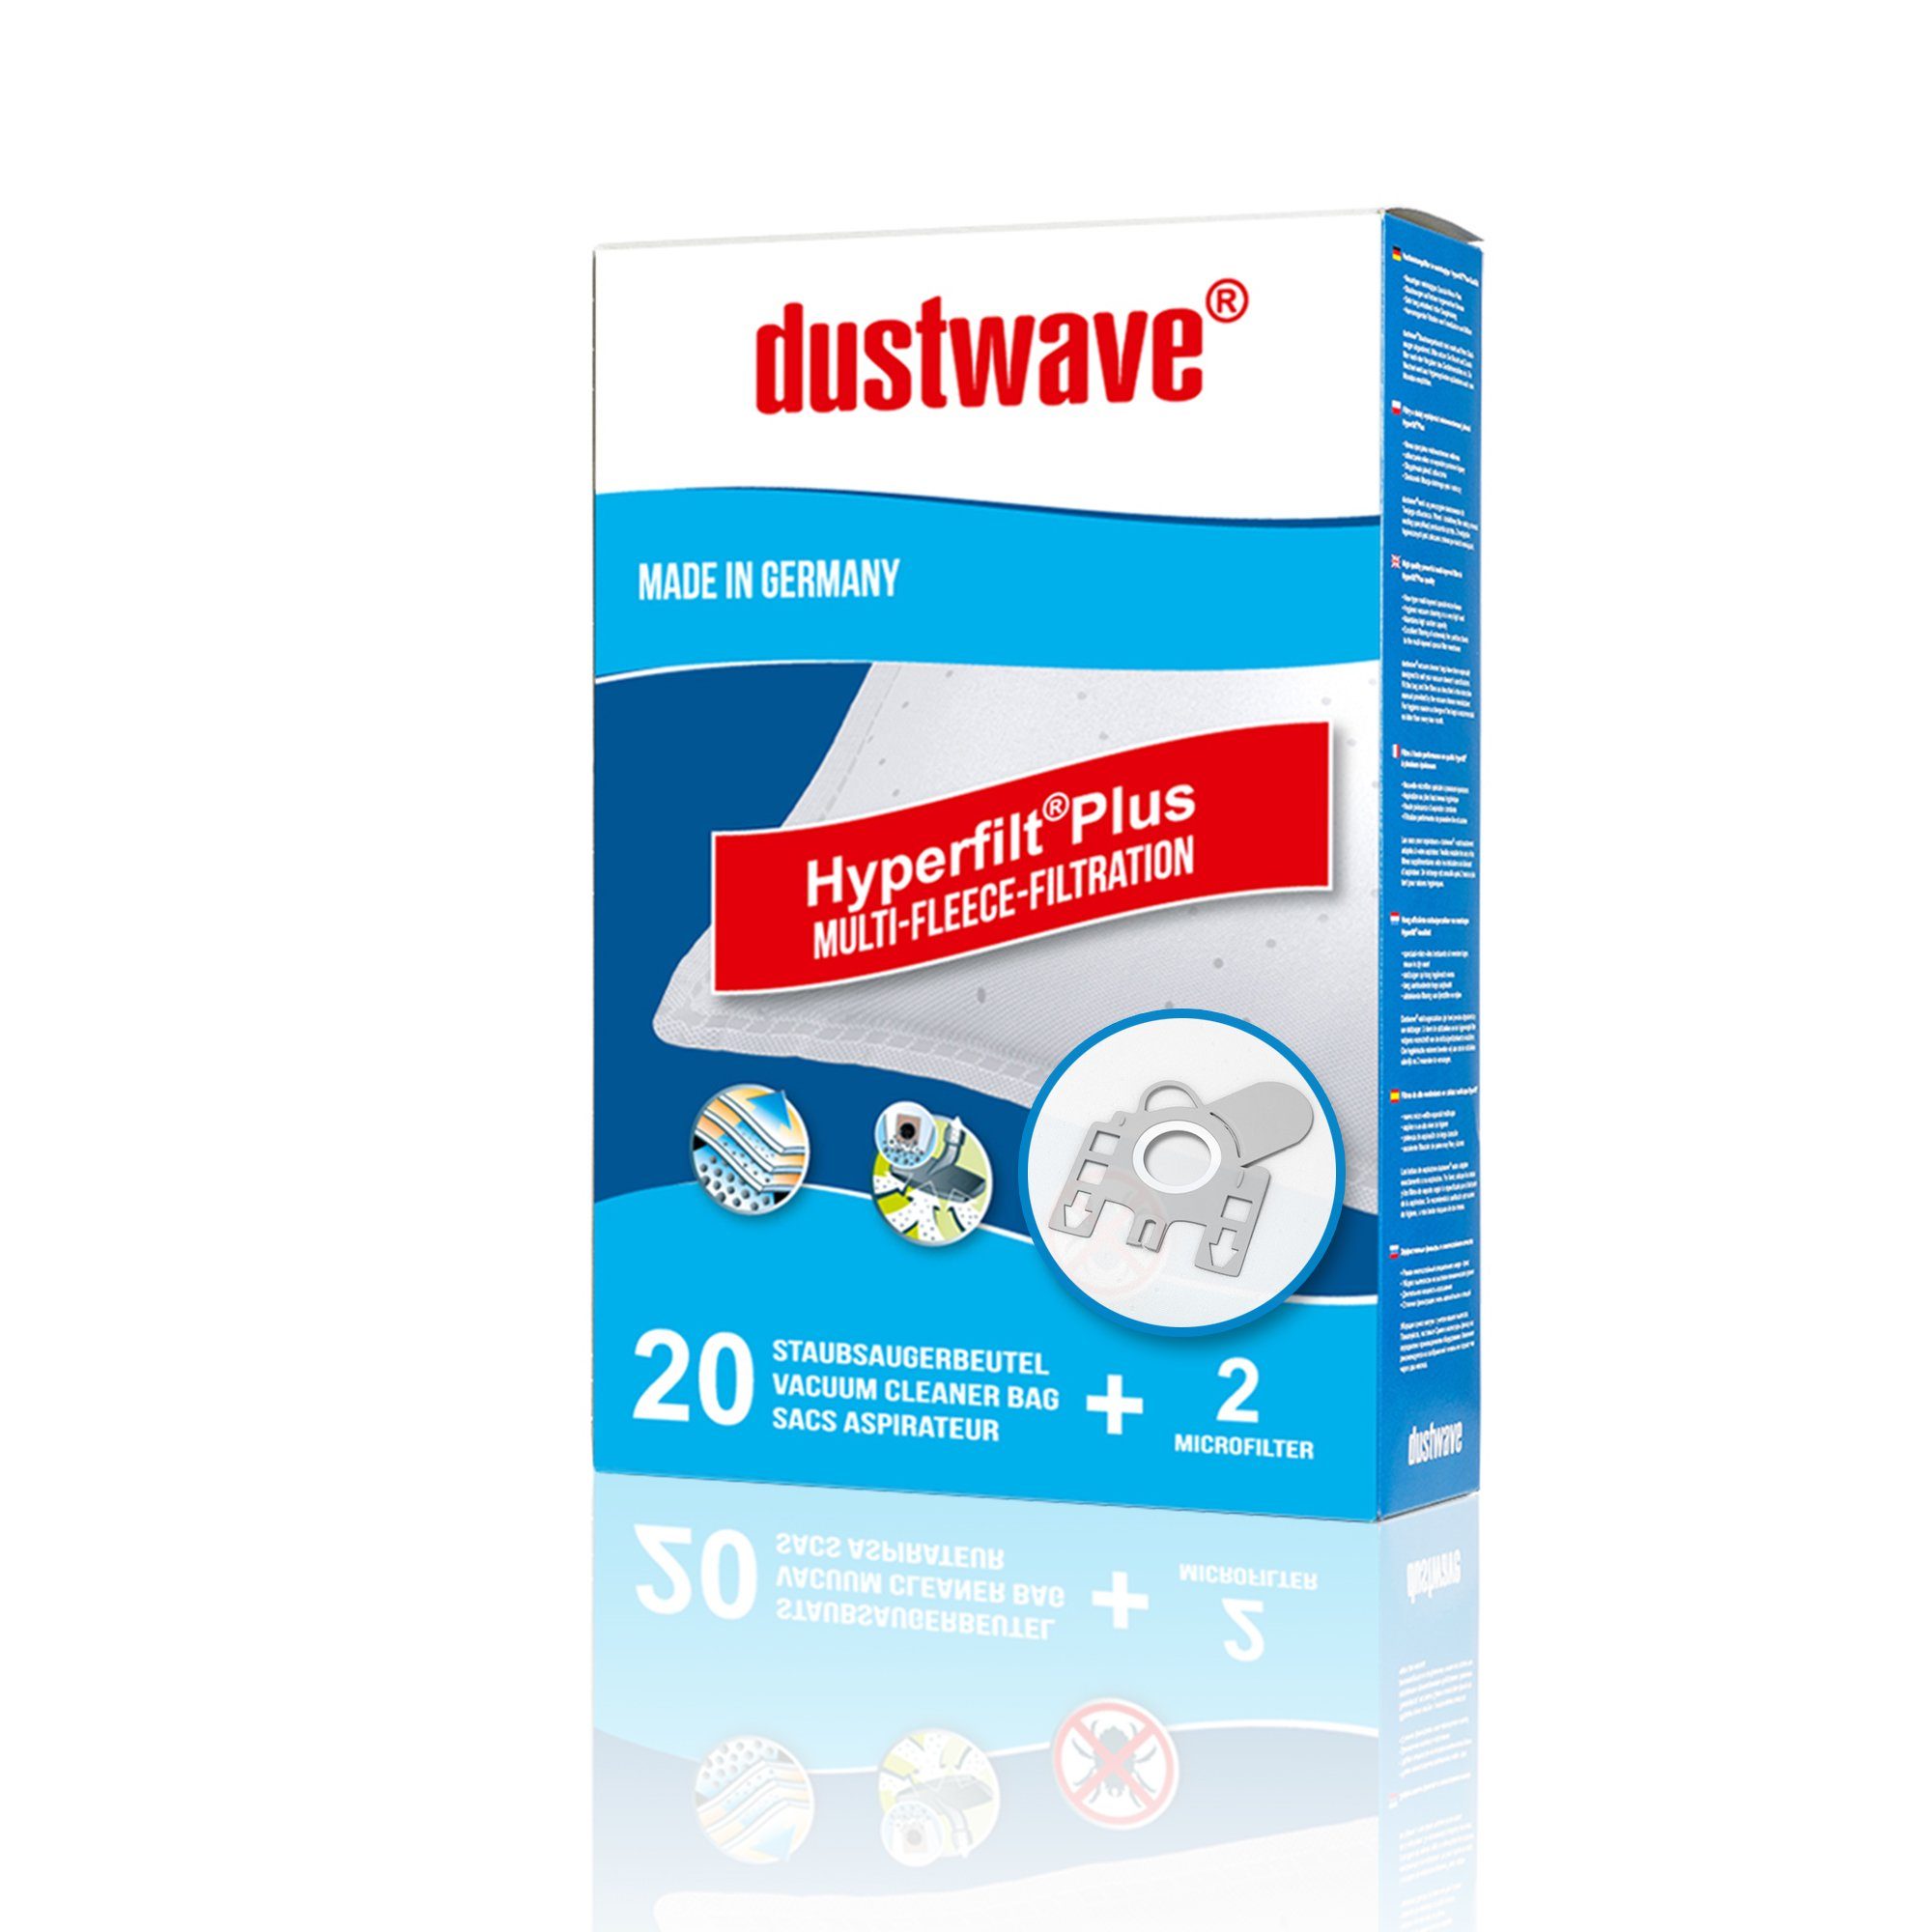 Dustwave Staubsaugerbeutel Megapack, passend für Adix 170, 20 St., Megapack, 20 Staubsaugerbeutel + 2 Hepa-Filter (ca. 15x15cm - zuschneidbar) Adix 170 - Premium | 